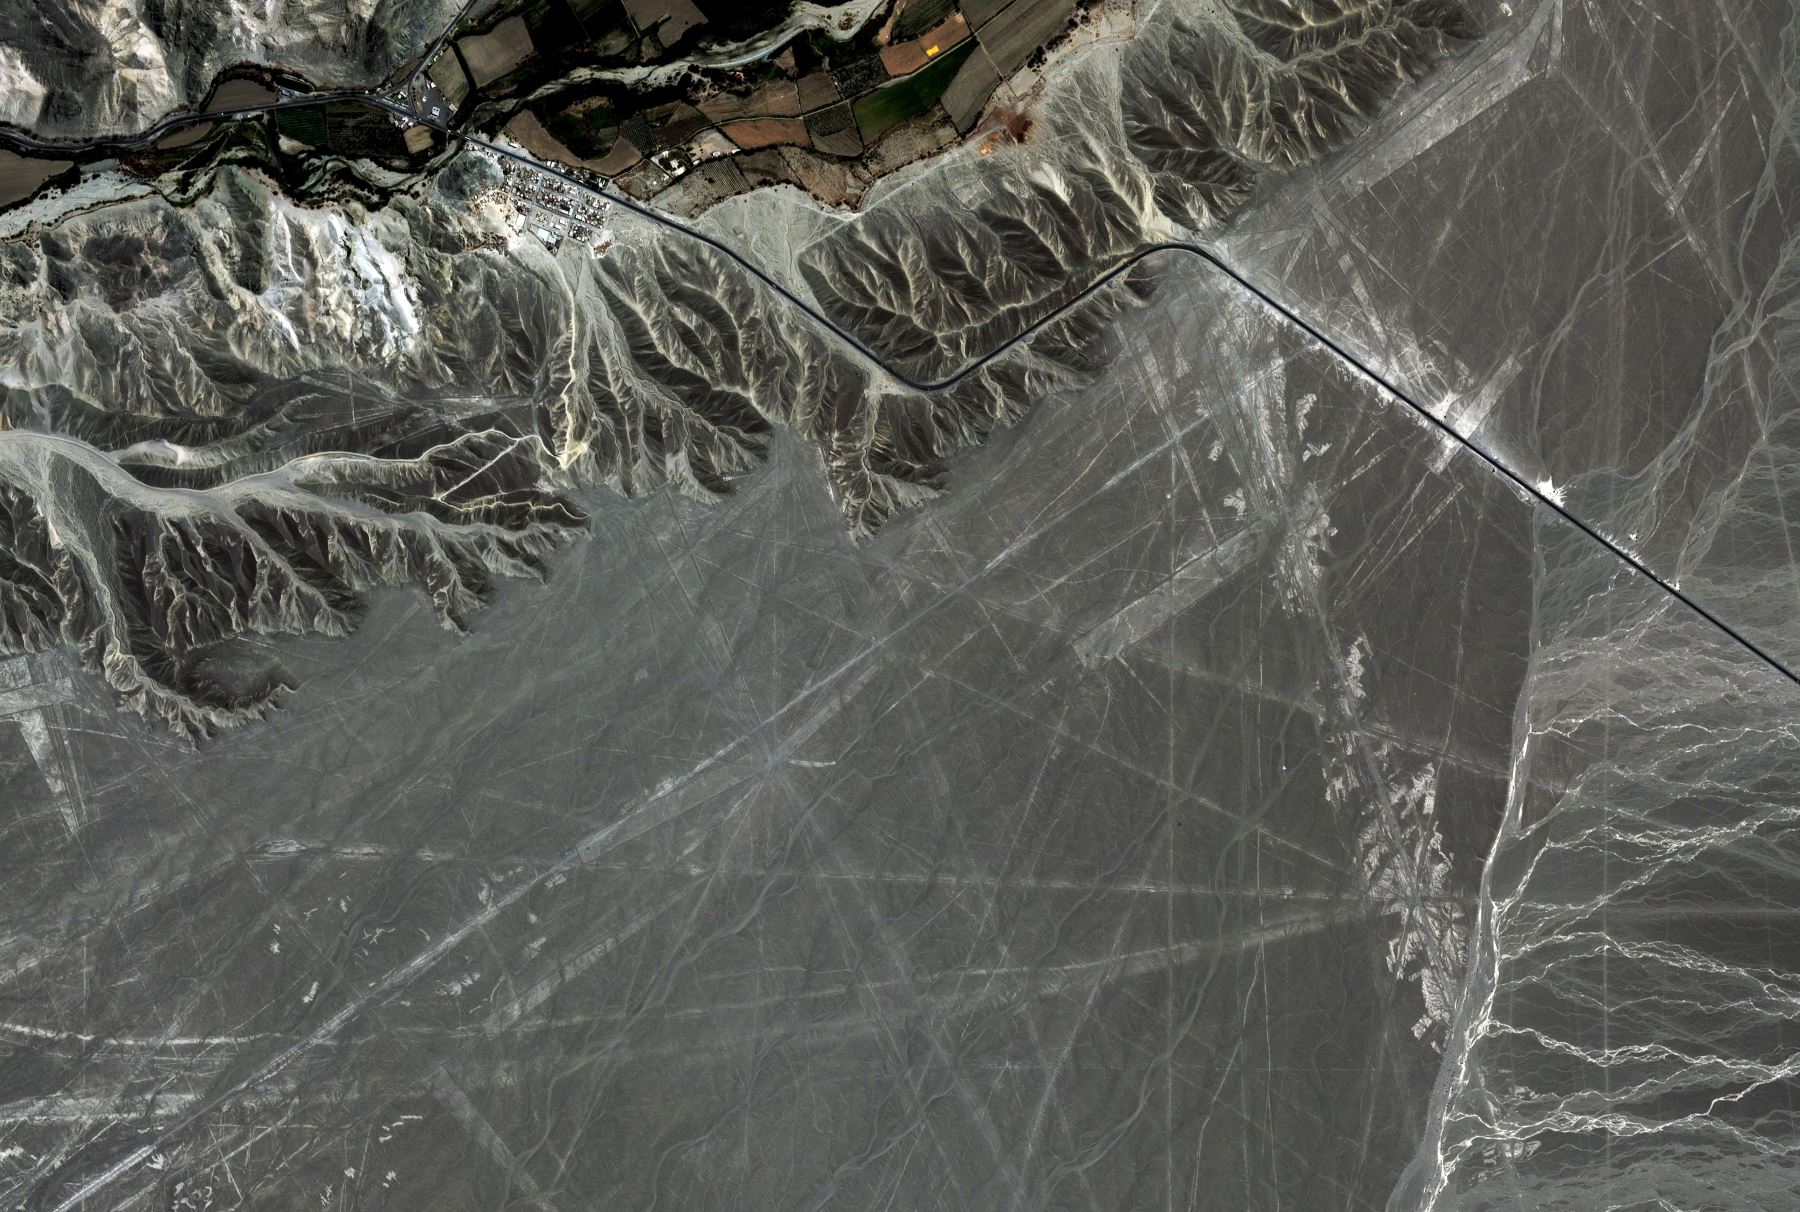 Perùsat - Premières images - First images - Nasca lines - géoglyphes de Nazca Perùsat - PeruSAT-1 - First image - satellite péruvien - CONIDA